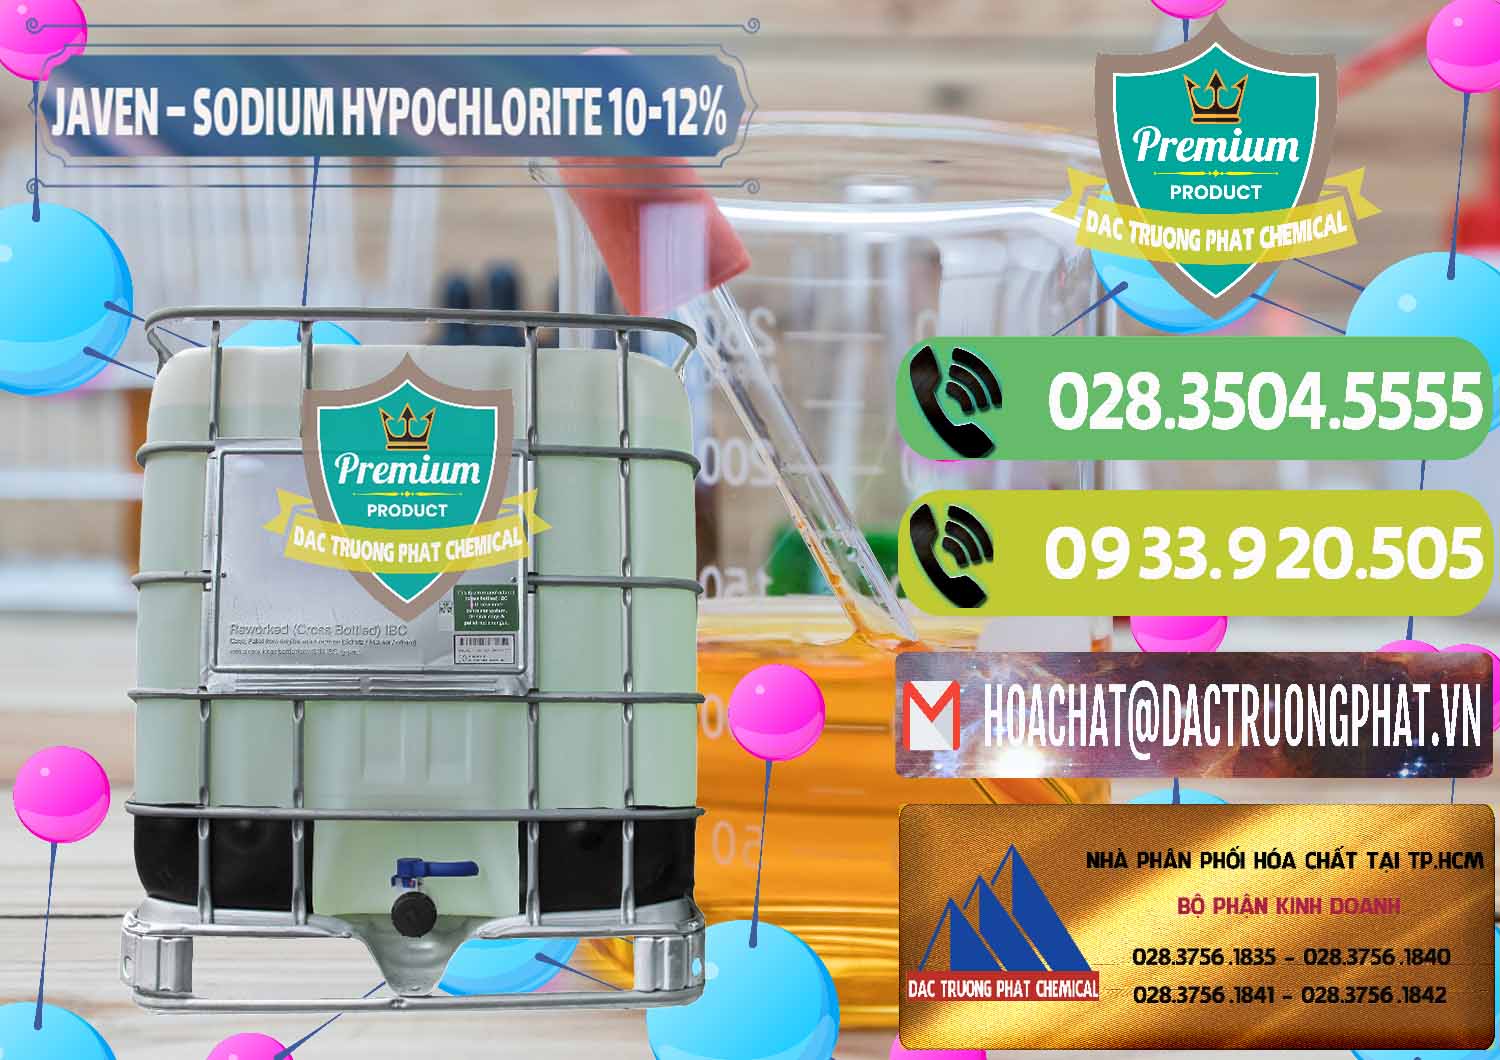 Cty bán _ cung cấp Javen - Sodium Hypochlorite 10-12% Việt Nam - 0188 - Chuyên cung cấp _ phân phối hóa chất tại TP.HCM - hoachatmientay.vn